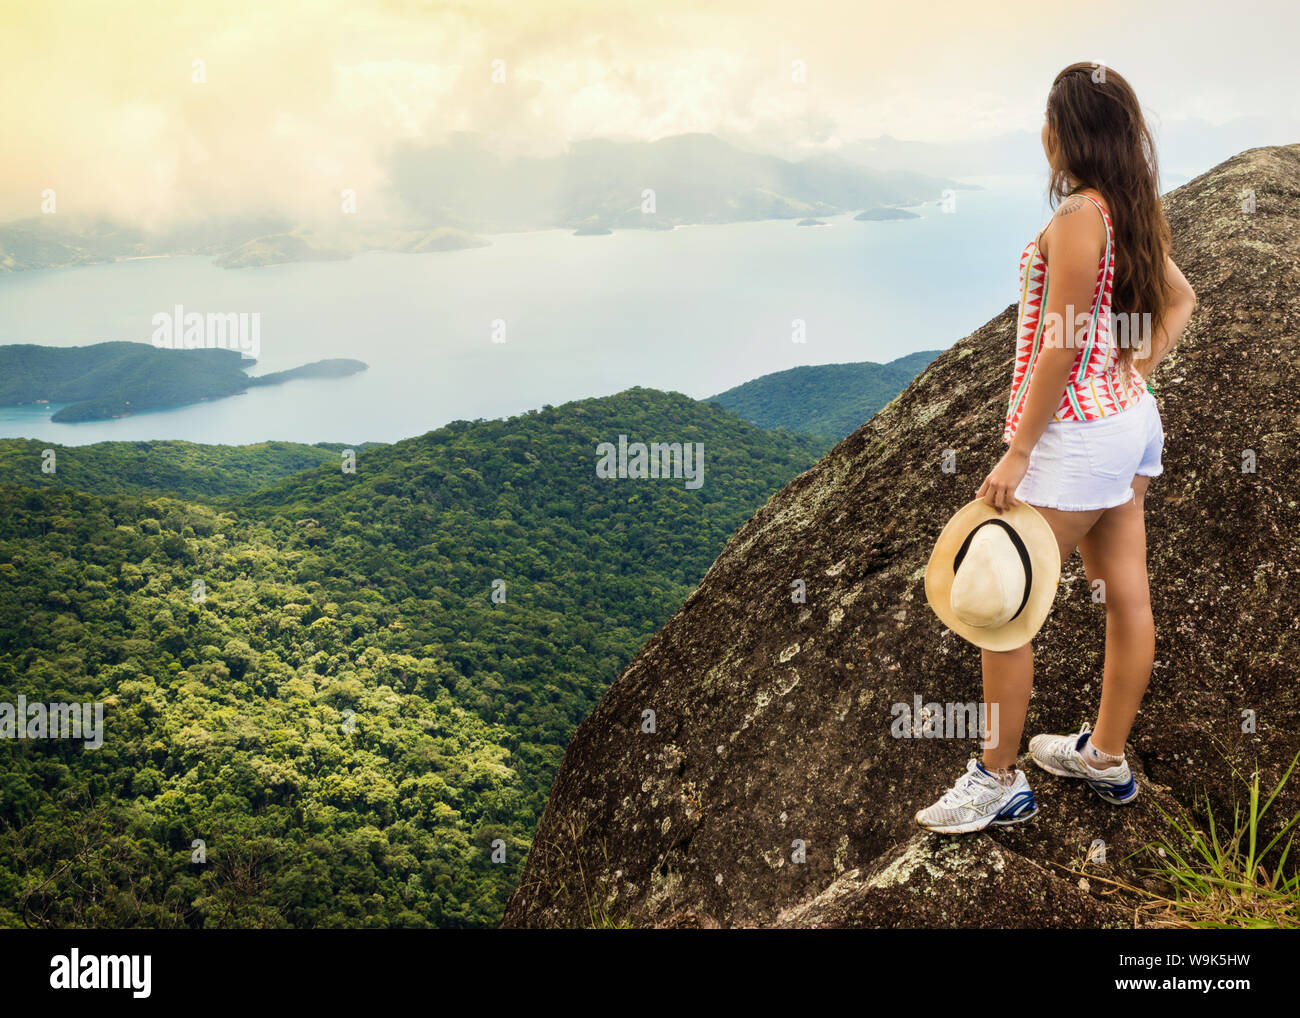 Junge Frau mit Blick auf die grüne Küste (Costa Verde) von Papapagaio Gipfel (Pico do Papagaio) auf der Insel Ilha Grande, Rio de Janeiro, Brasilien Stockfoto